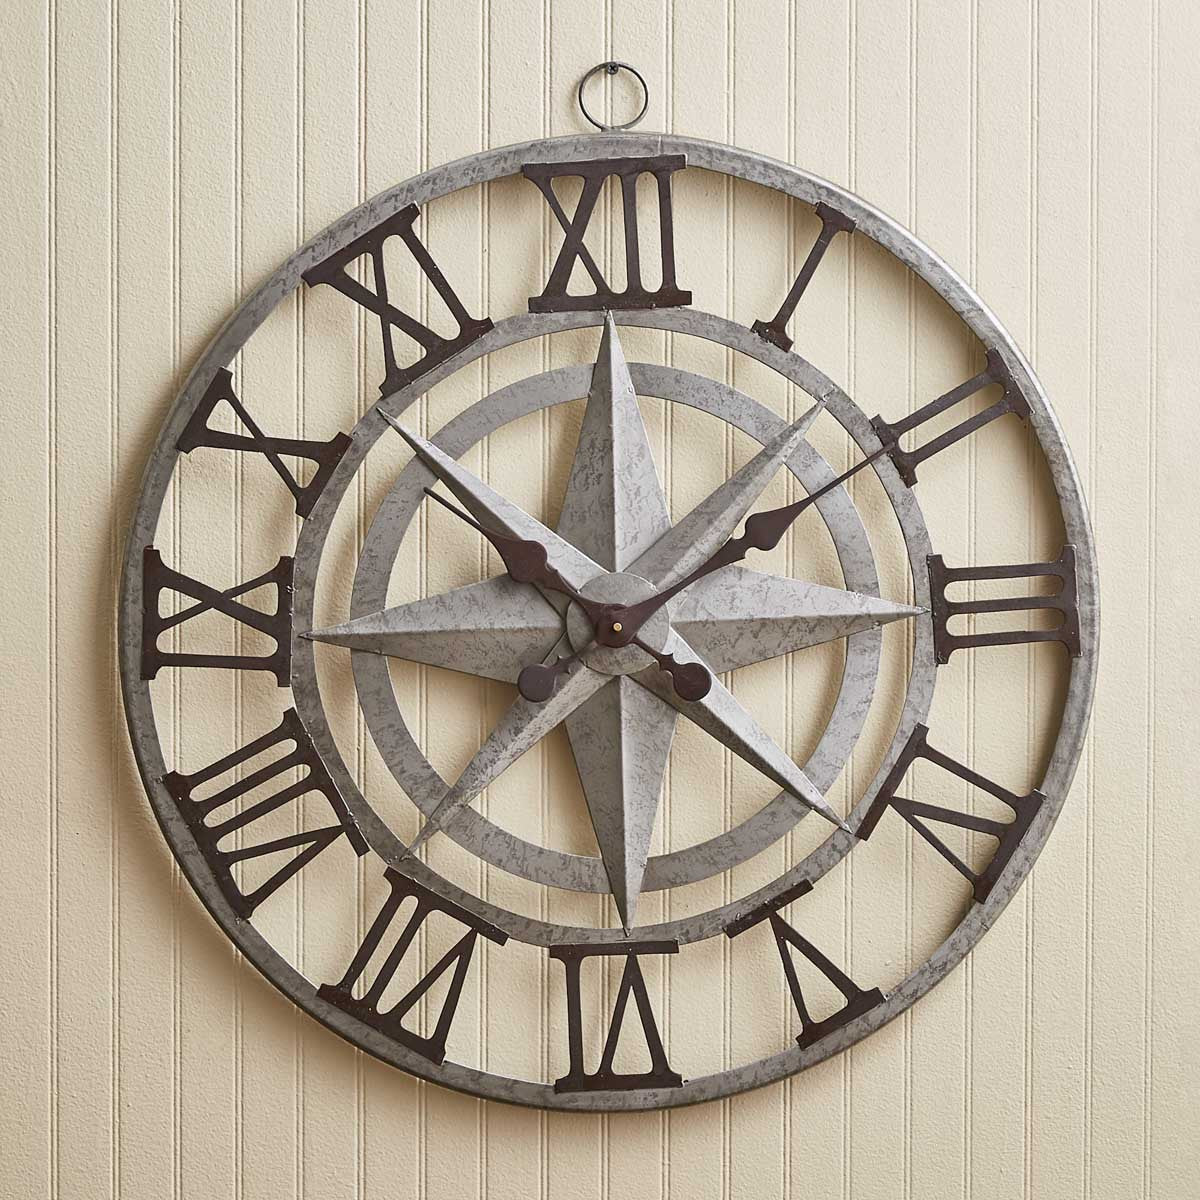 Compass Wall Clock Park Designs